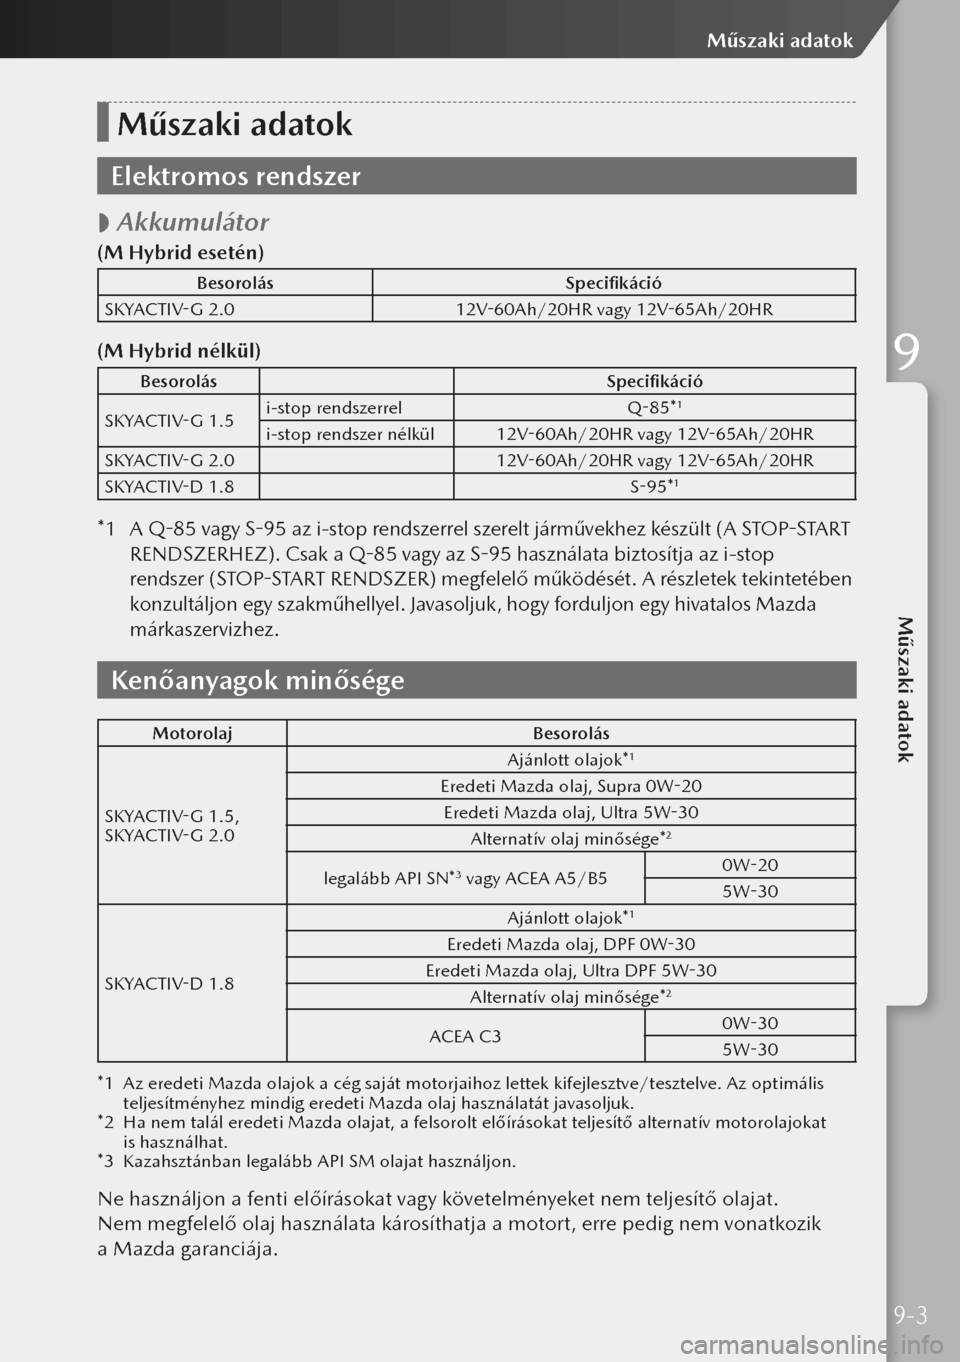 MAZDA MODEL 3 HATCHBACK 2019  Kezelési útmutató (in Hungarian) Műszaki adatok
Elektromos rendszer
 
 Akkumulátor
(M Hybrid esetén)
Besorolás
Specifikáció
SKYACTIV-G 2.0 12V-60Ah/20HR vagy 12V-65Ah/20HR
(M Hybrid nélkül)
Besorolás Specifikáció
SKYACTI